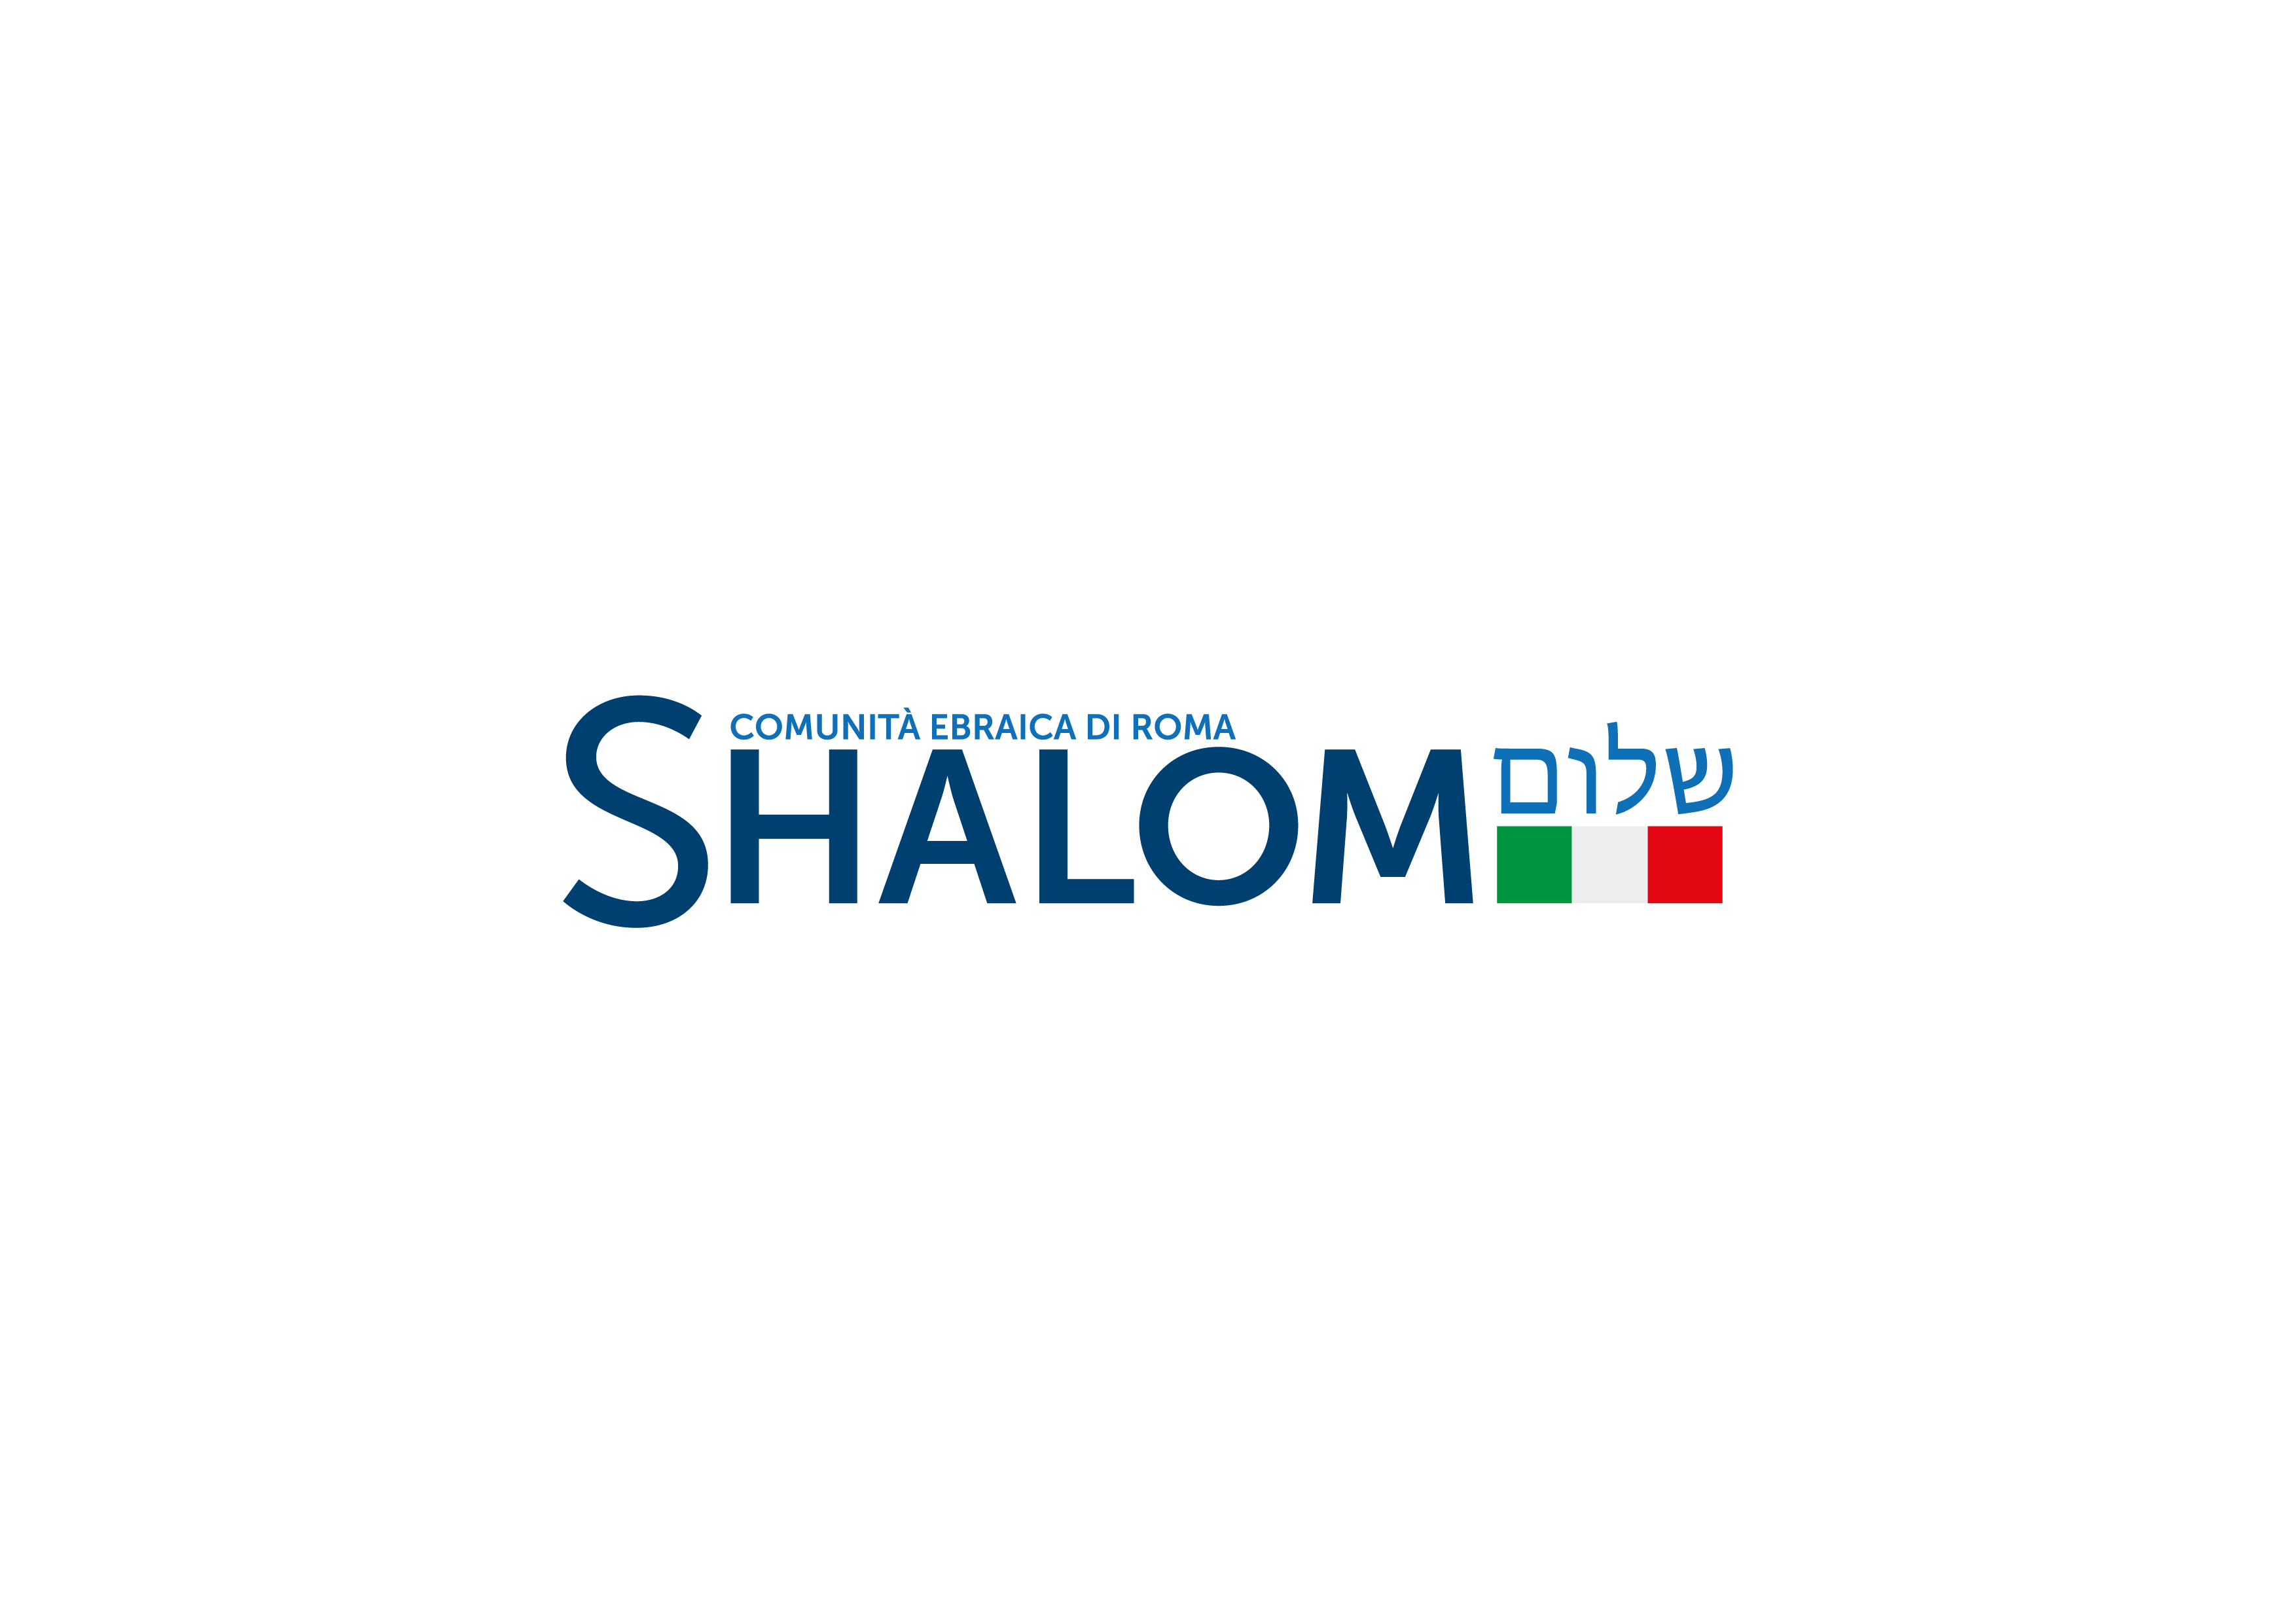 (c) Shalom.it